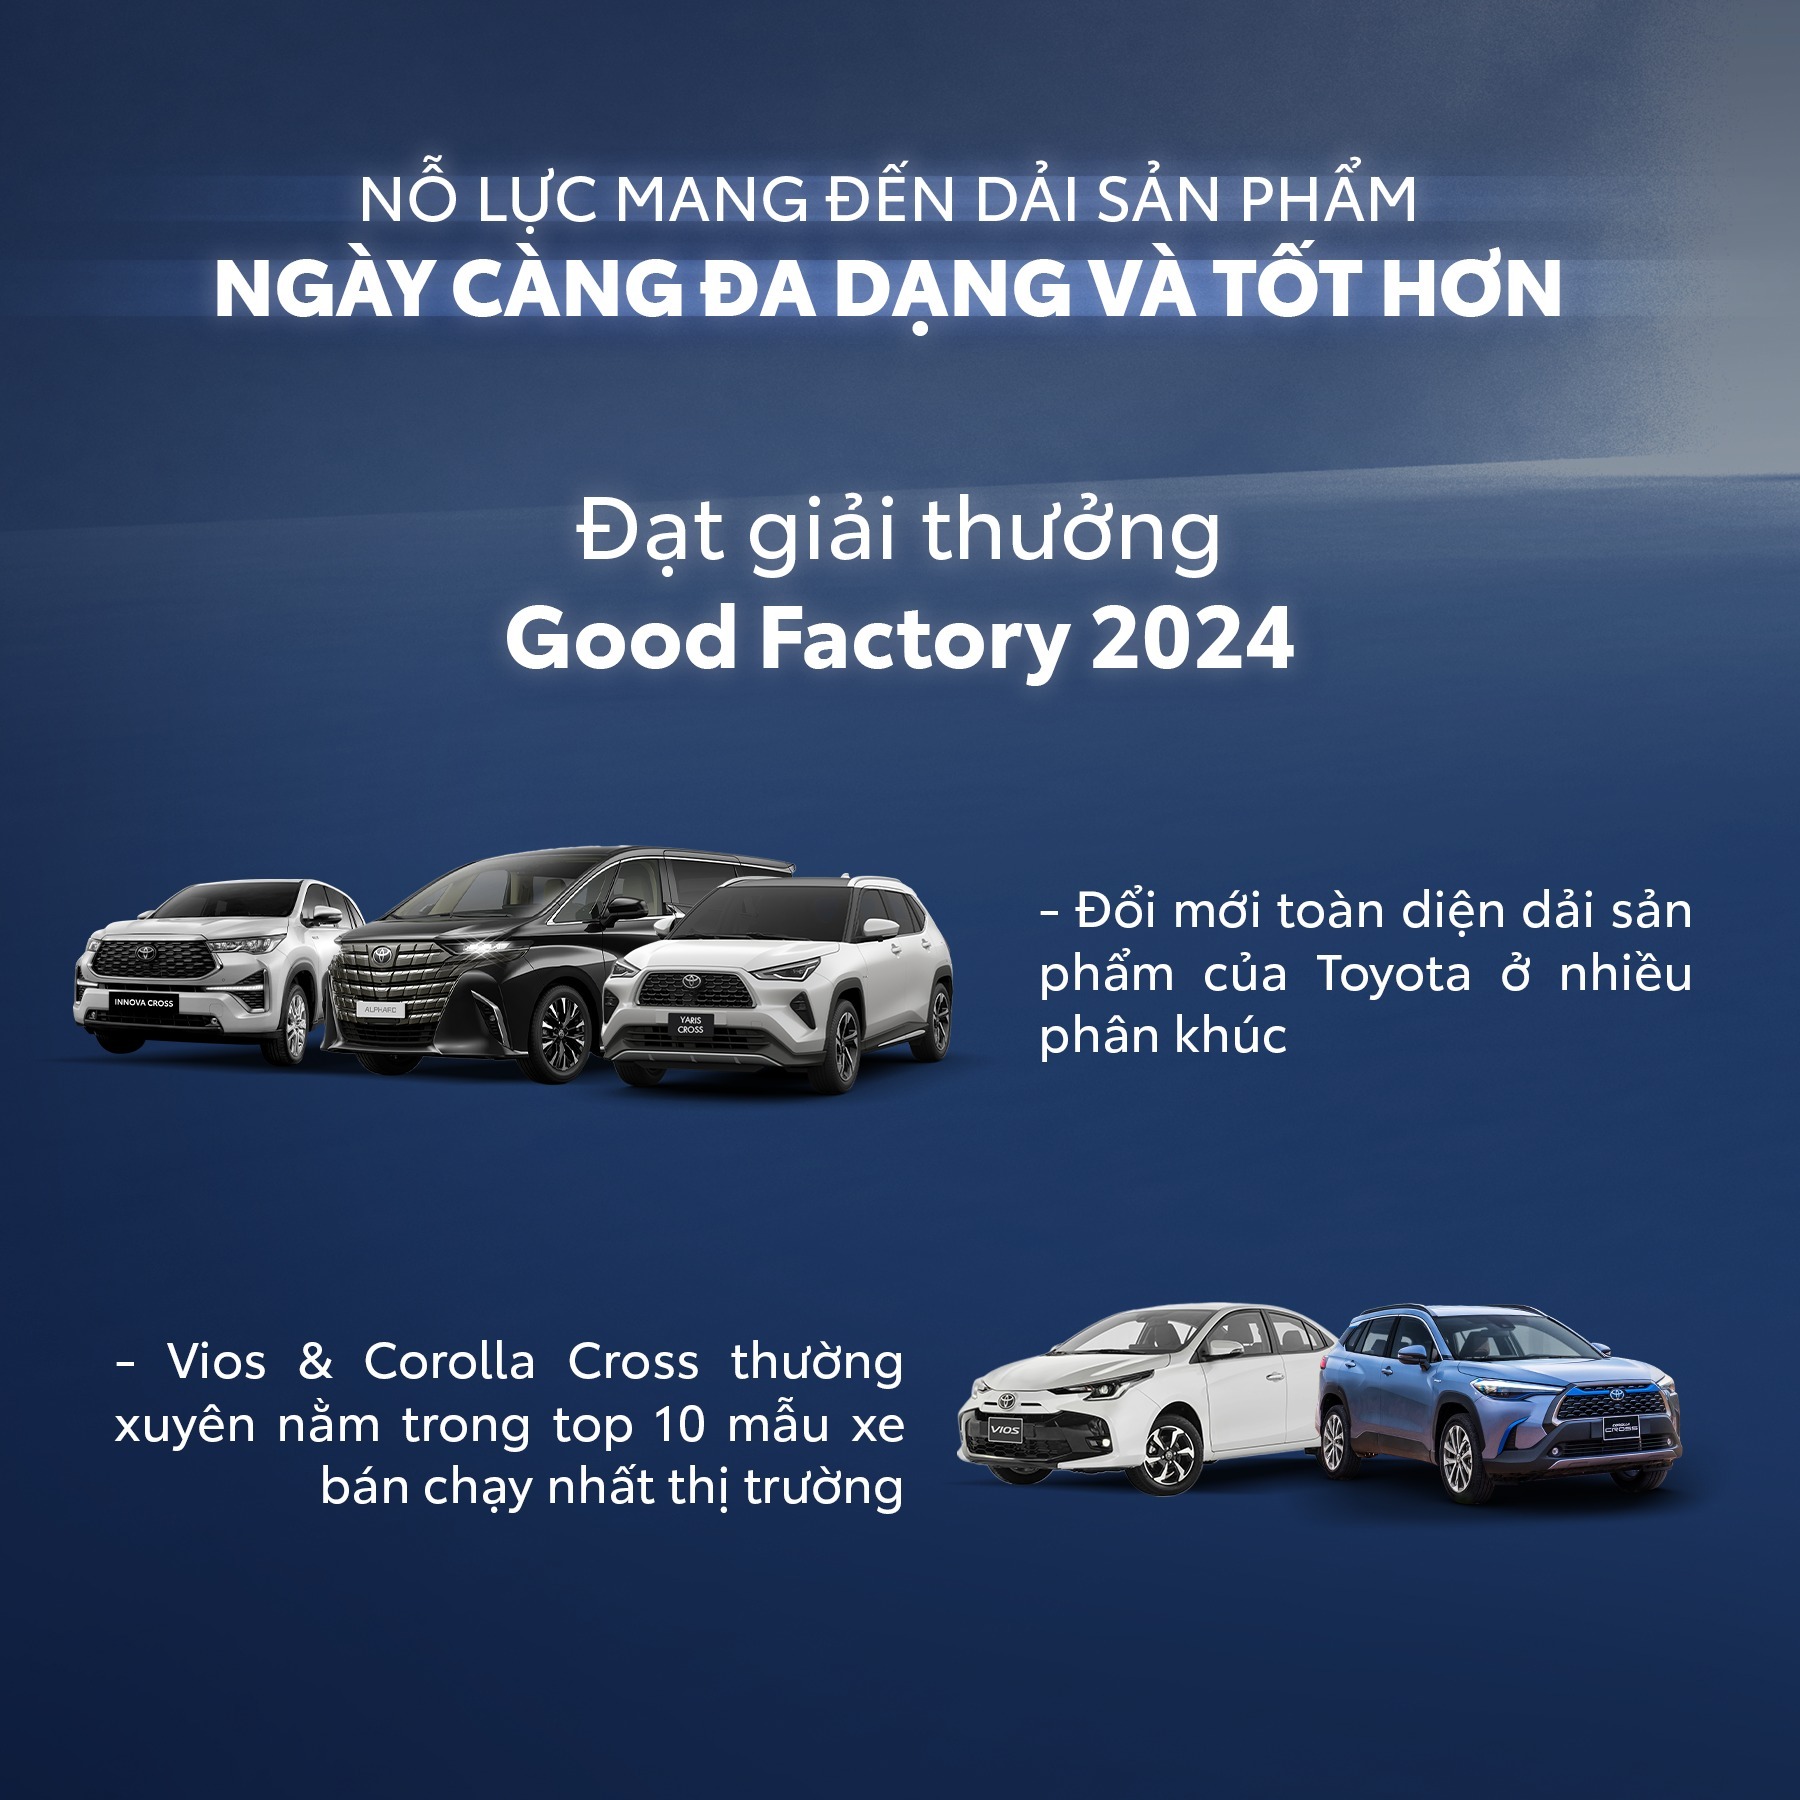 Năm 2023 đã trôi qua, là một chặng đường dài với nhiều thách thức, nhưng tại Toyota Việt Nam, chúng tôi tin rằng tinh thần "Move Your World" đã giúp chúng tôi vượt qua mọi khó khăn. Hãy cùng nhìn lại những điểm đặc biệt của chúng tôi trong kinh doanh và hoạt động năm qua.